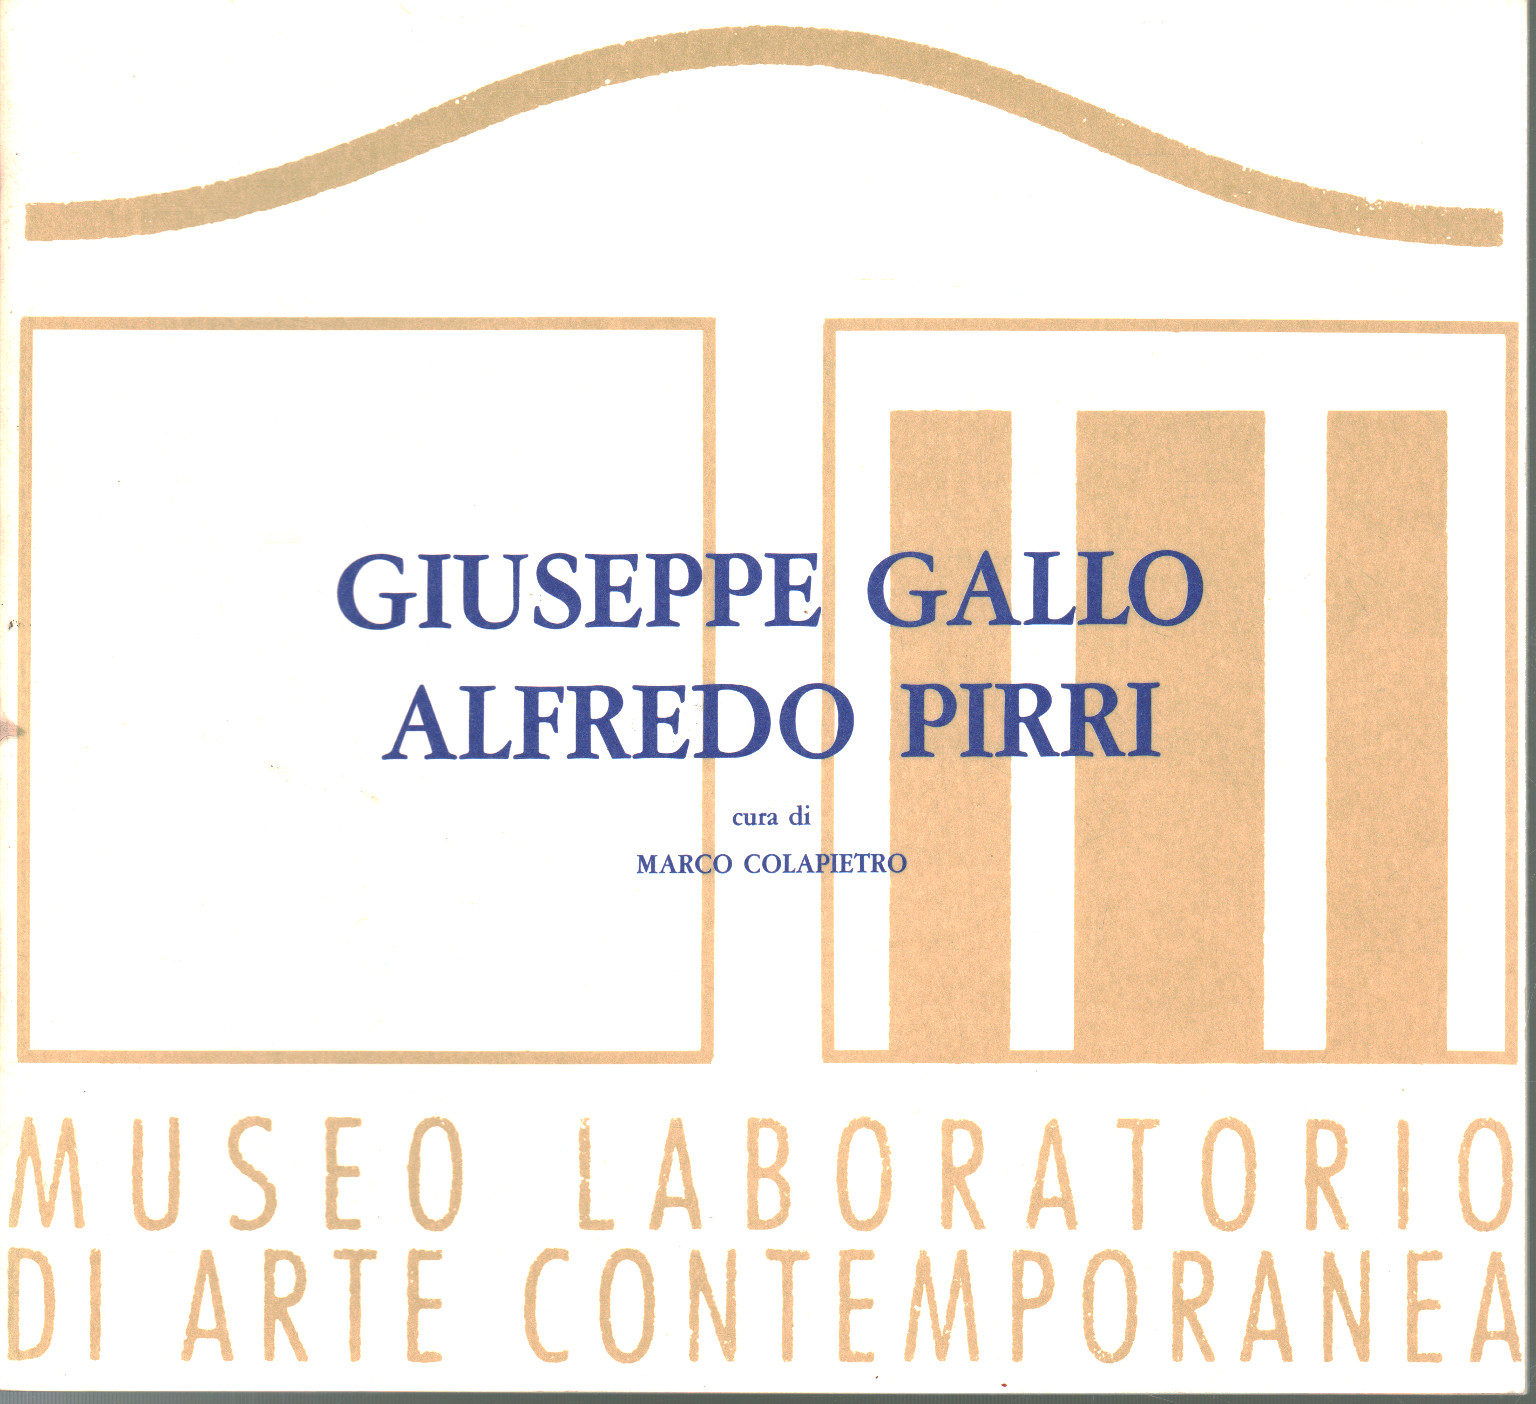 Giuseppe Gallo Alfredo Pirri, Marco Colapietro